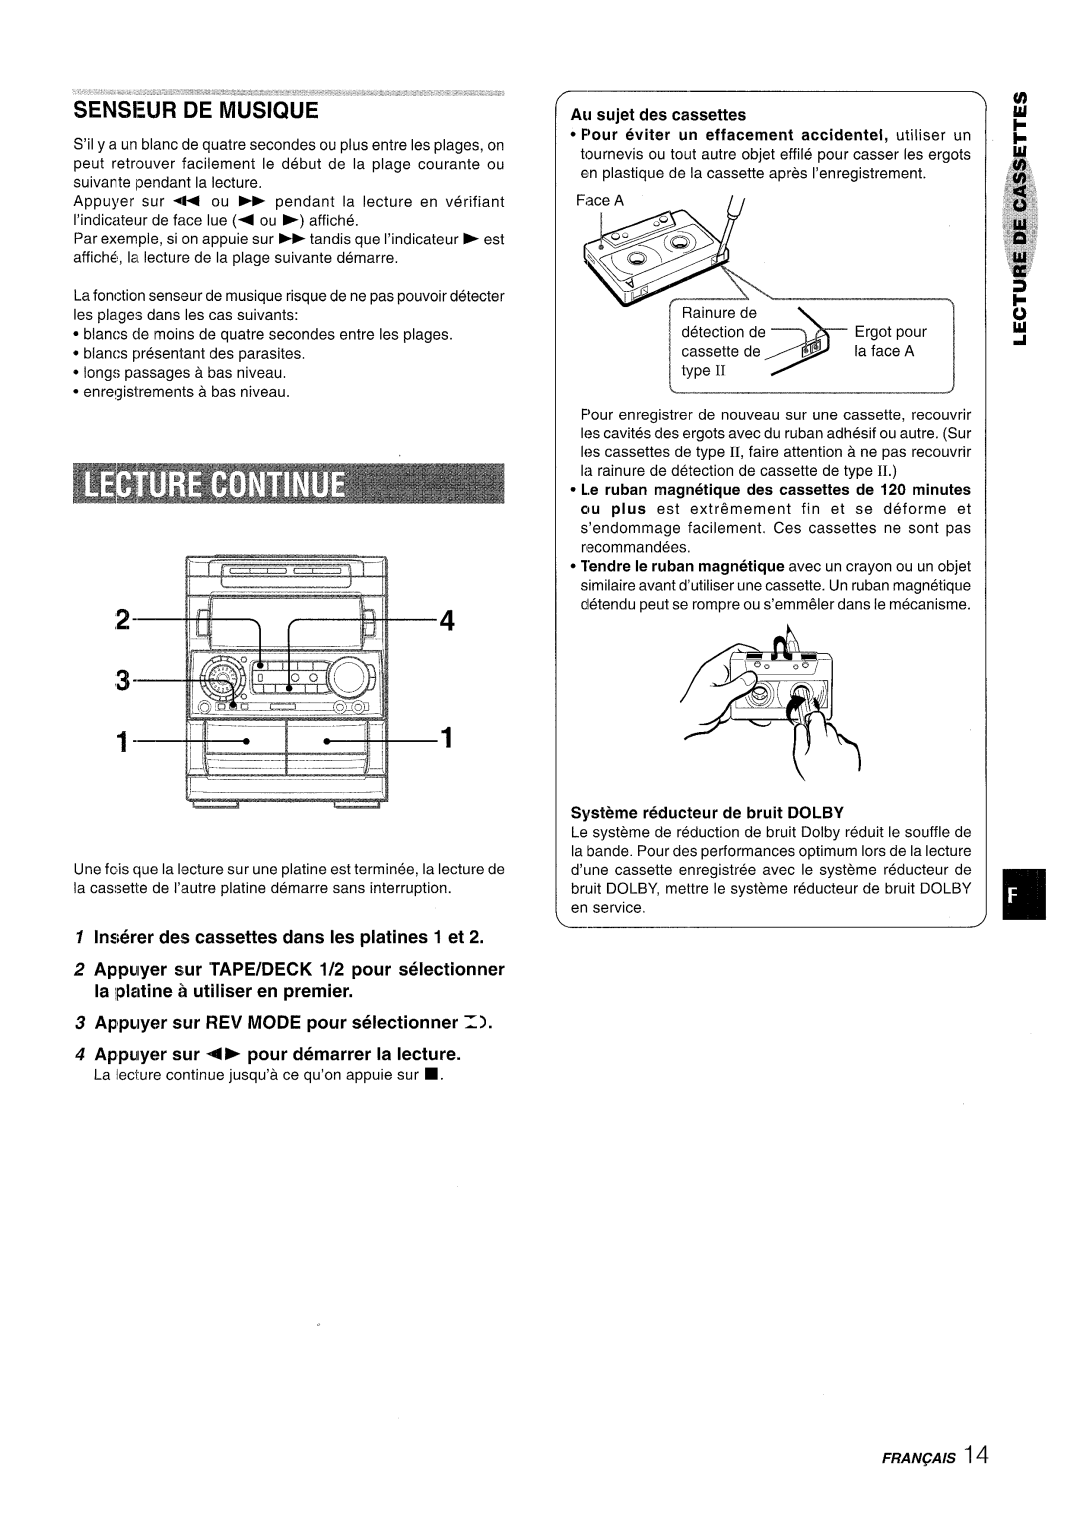 Aiwa NSX-A909 manual lnwjrer des cassettes clans Ies platines 1 et, Appuyer sur REV MODE pour selectionner, Fraiv&A/S 